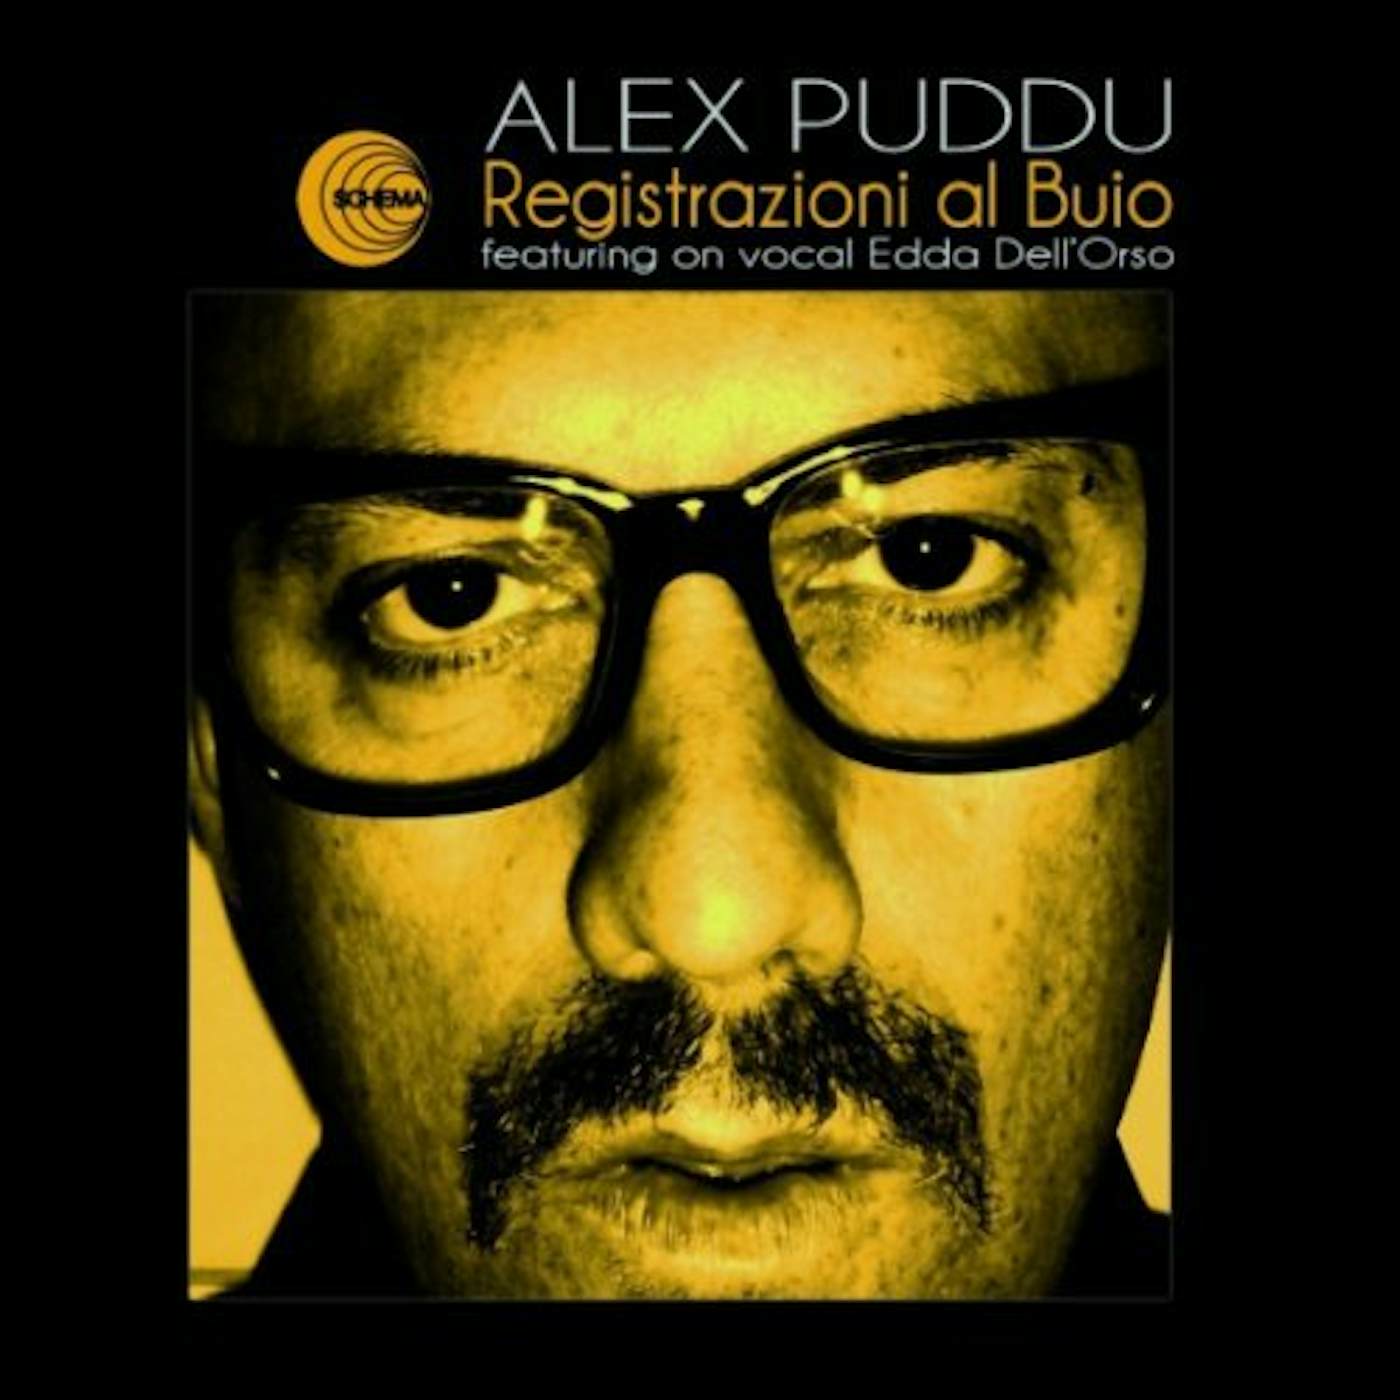 Alex Puddu Registrazioni al buio Vinyl Record